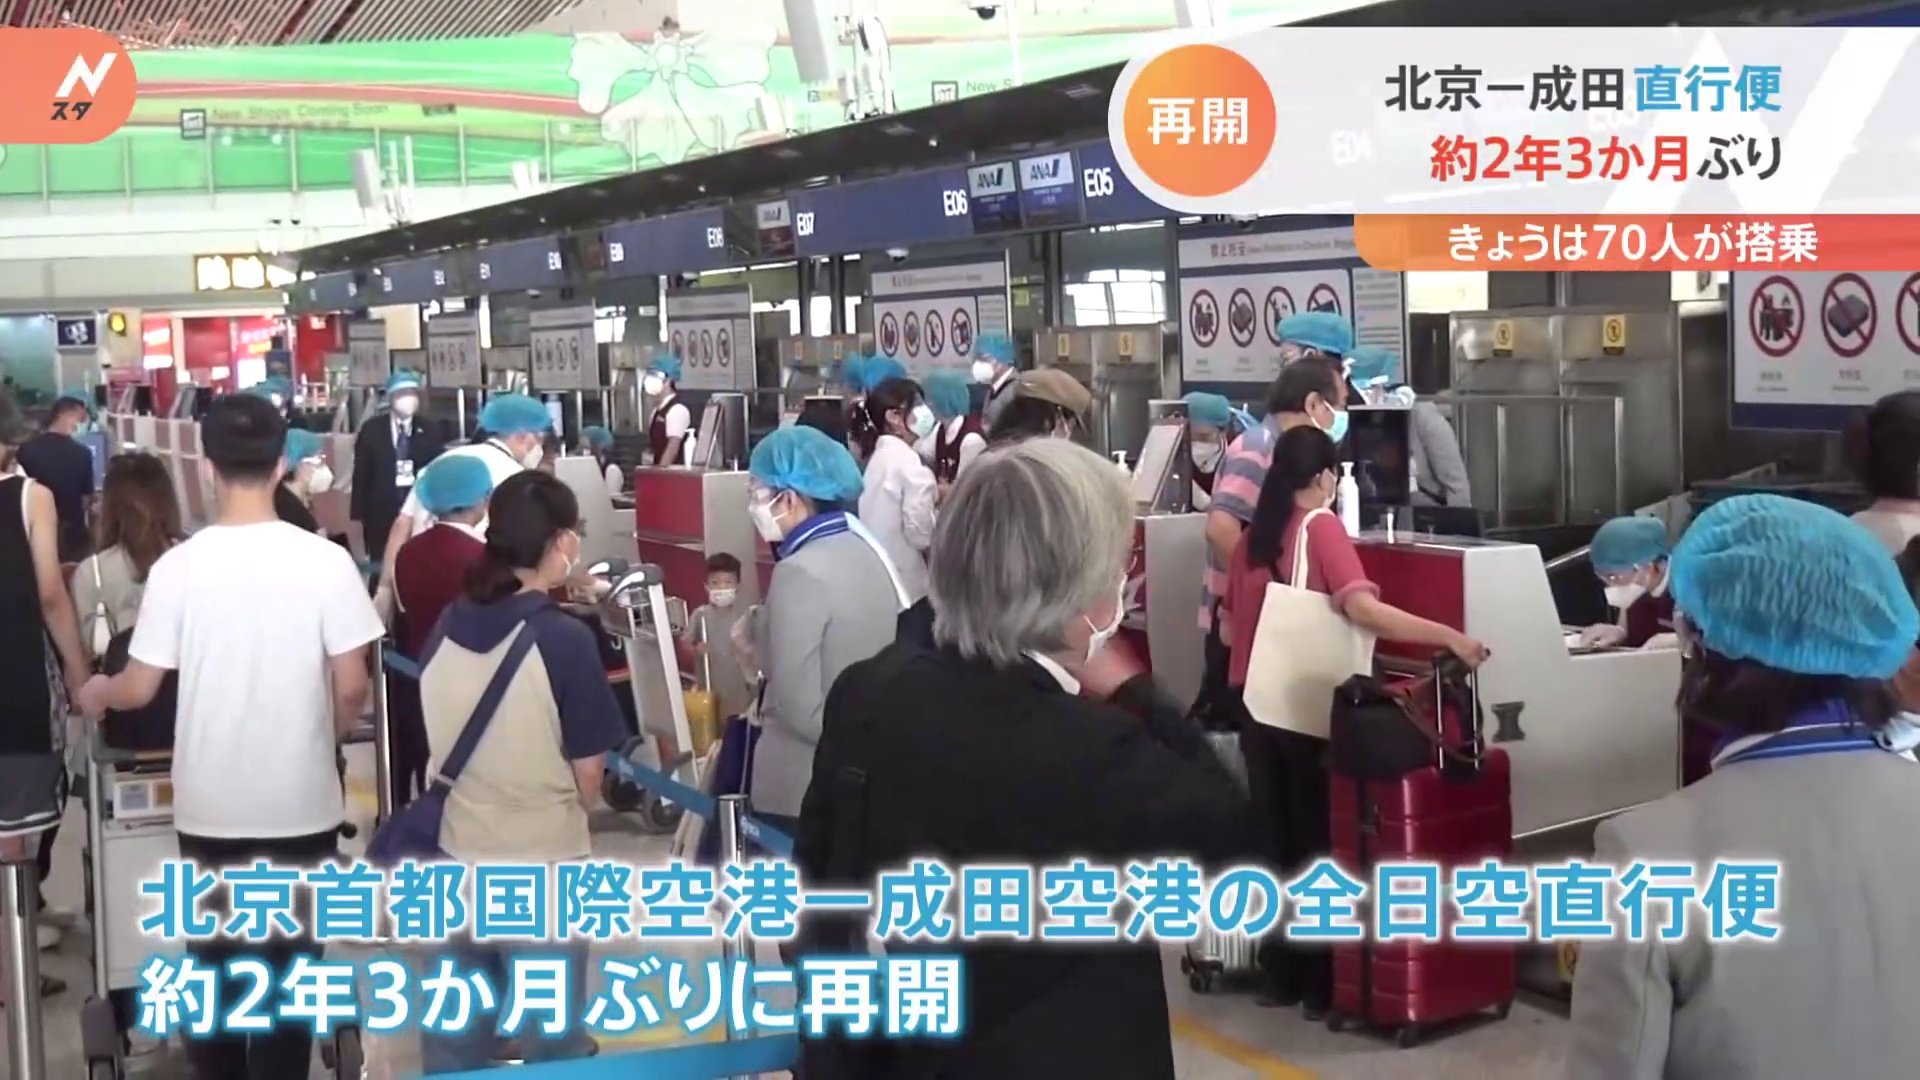 北京→成田 直行便が2年3か月ぶりに再開　当面は北京から成田までの片道だけ、 週1便が運航